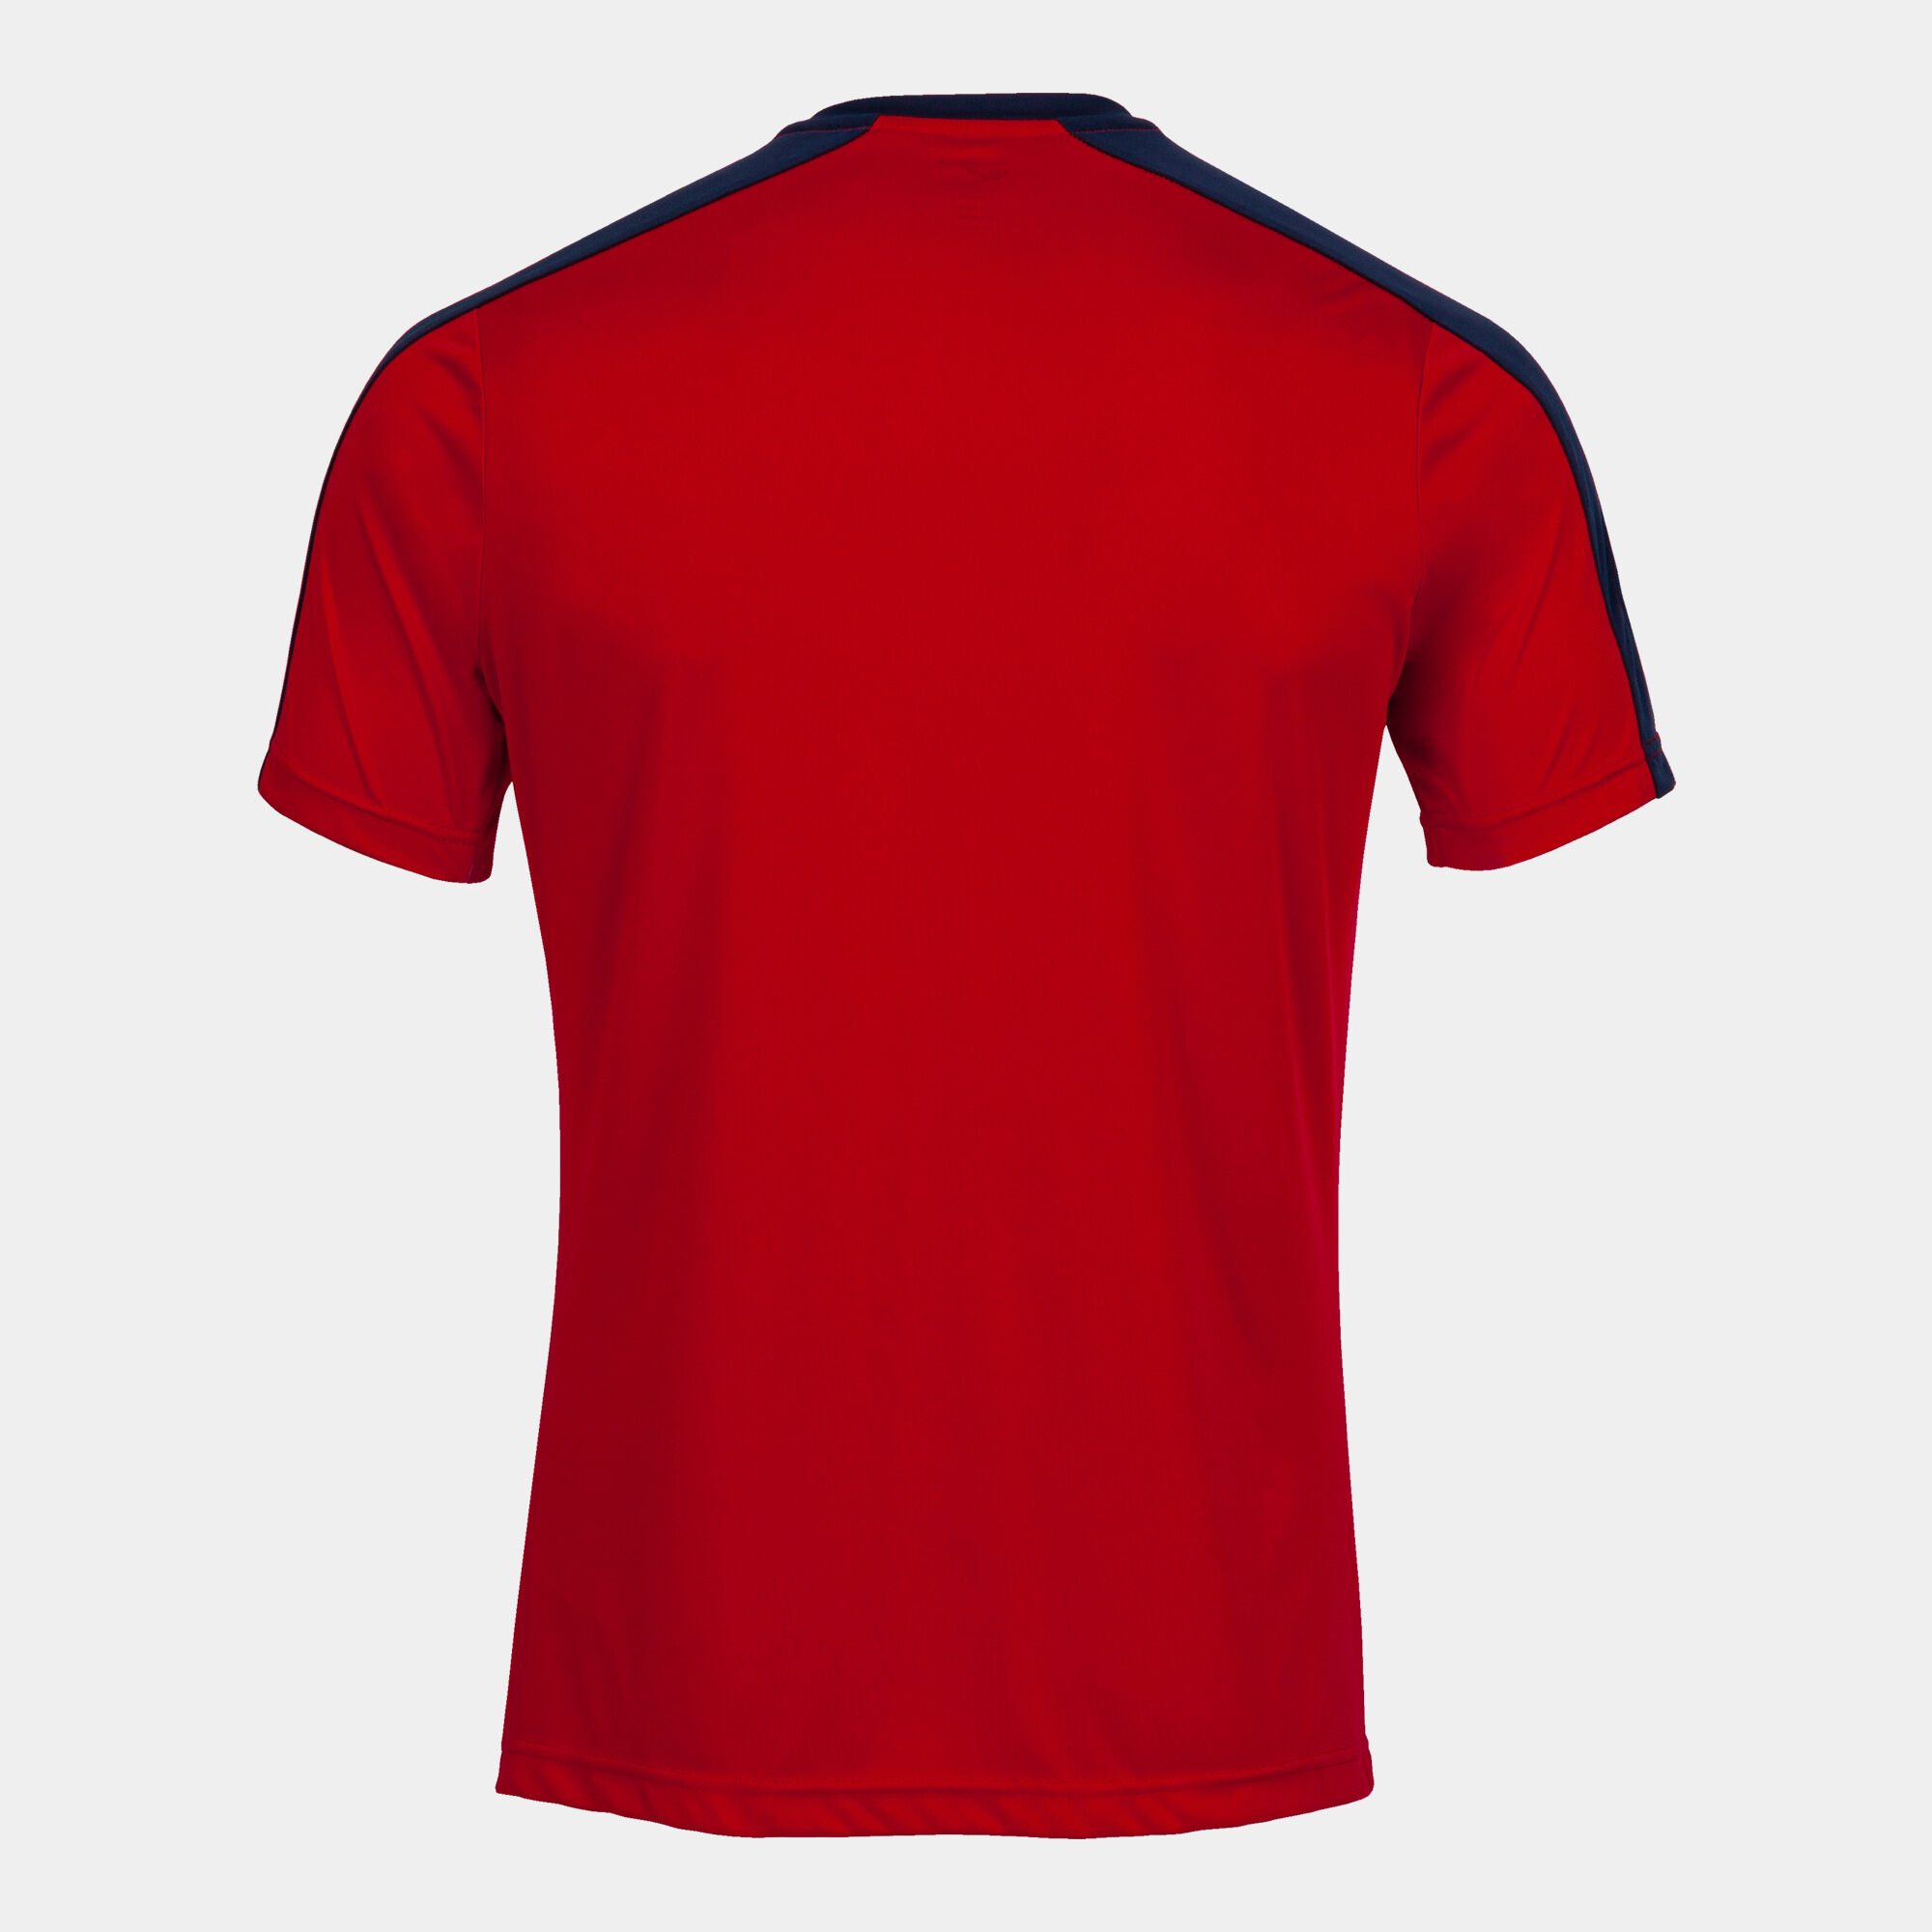 Bluzë Joma | Mëngë të shkurtra | Kuq e Blu | për stërvitje | Me logo KF Vllaznia